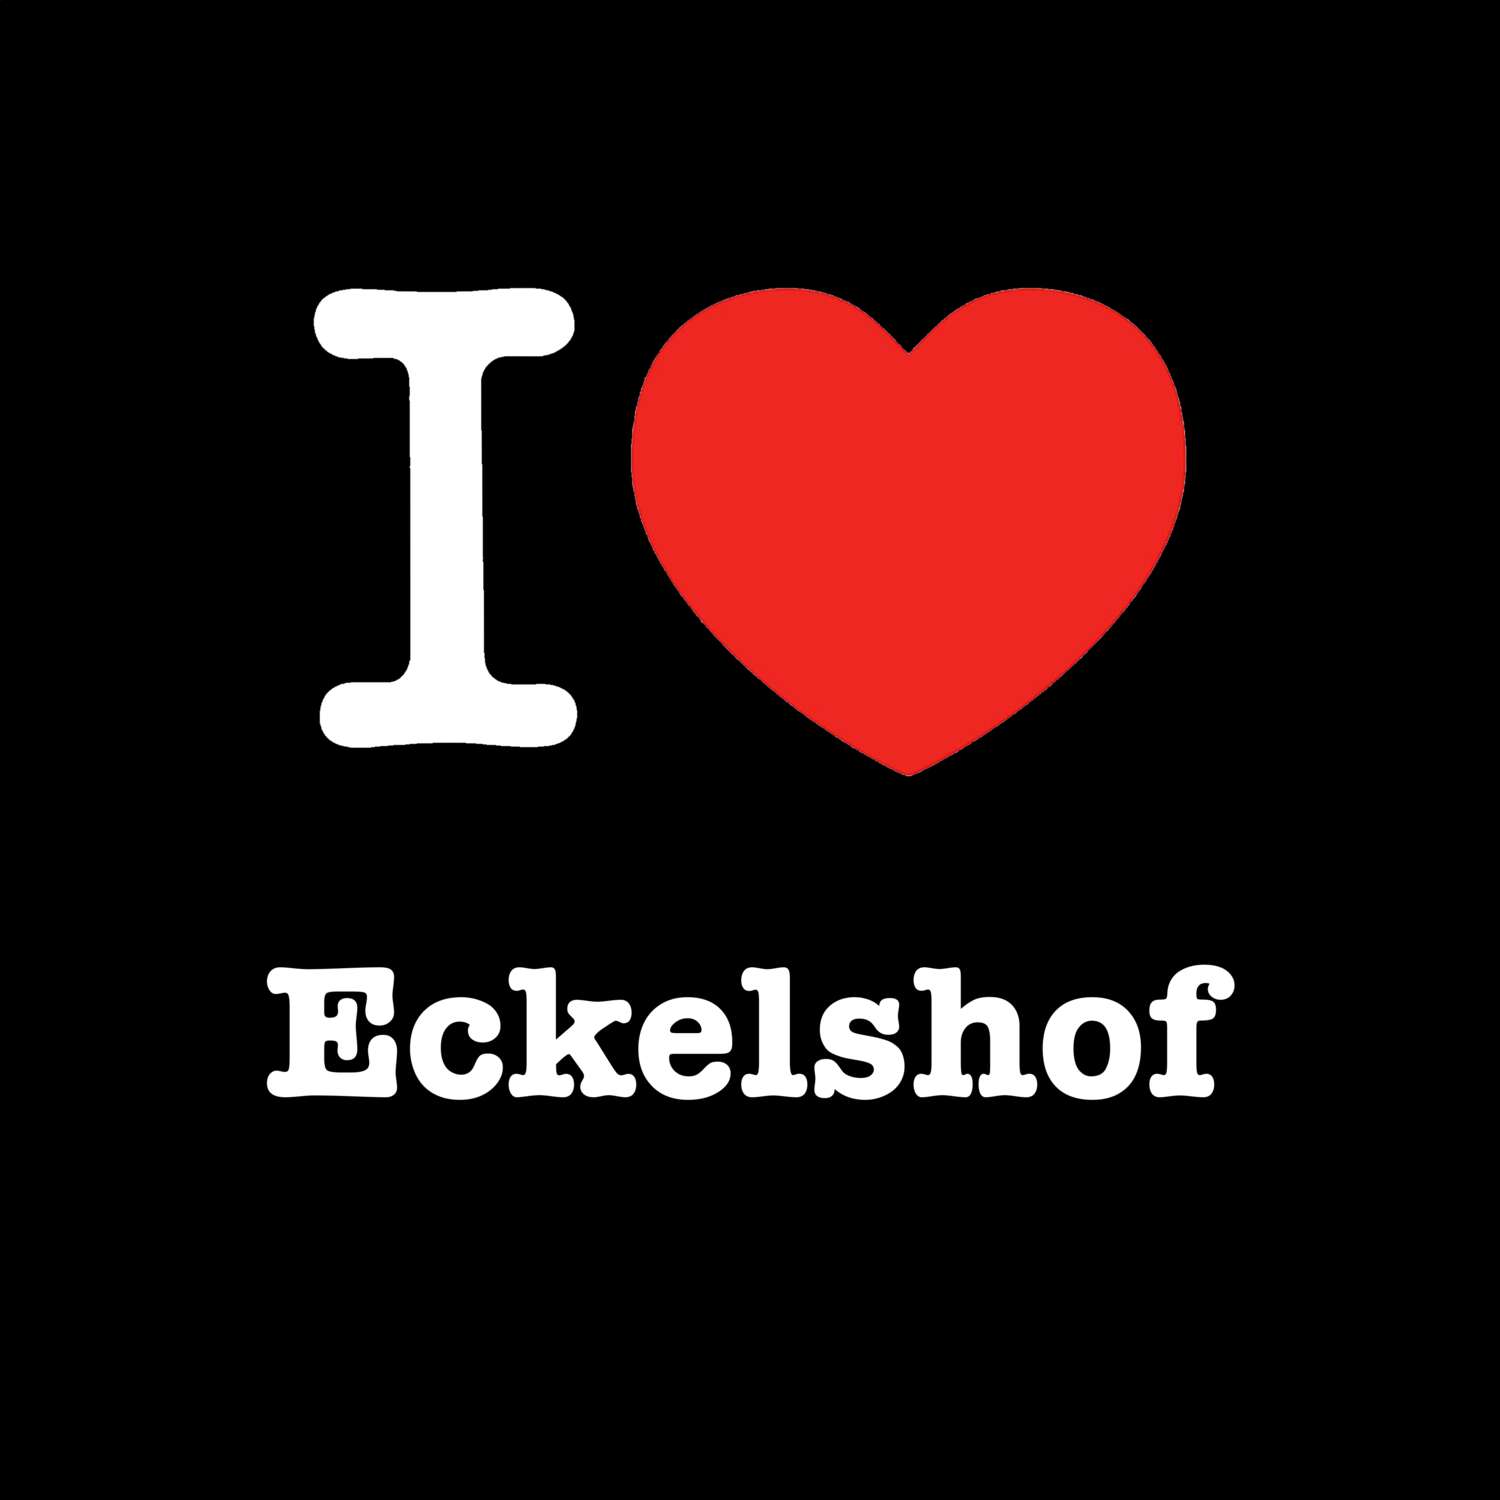 Eckelshof T-Shirt »I love«